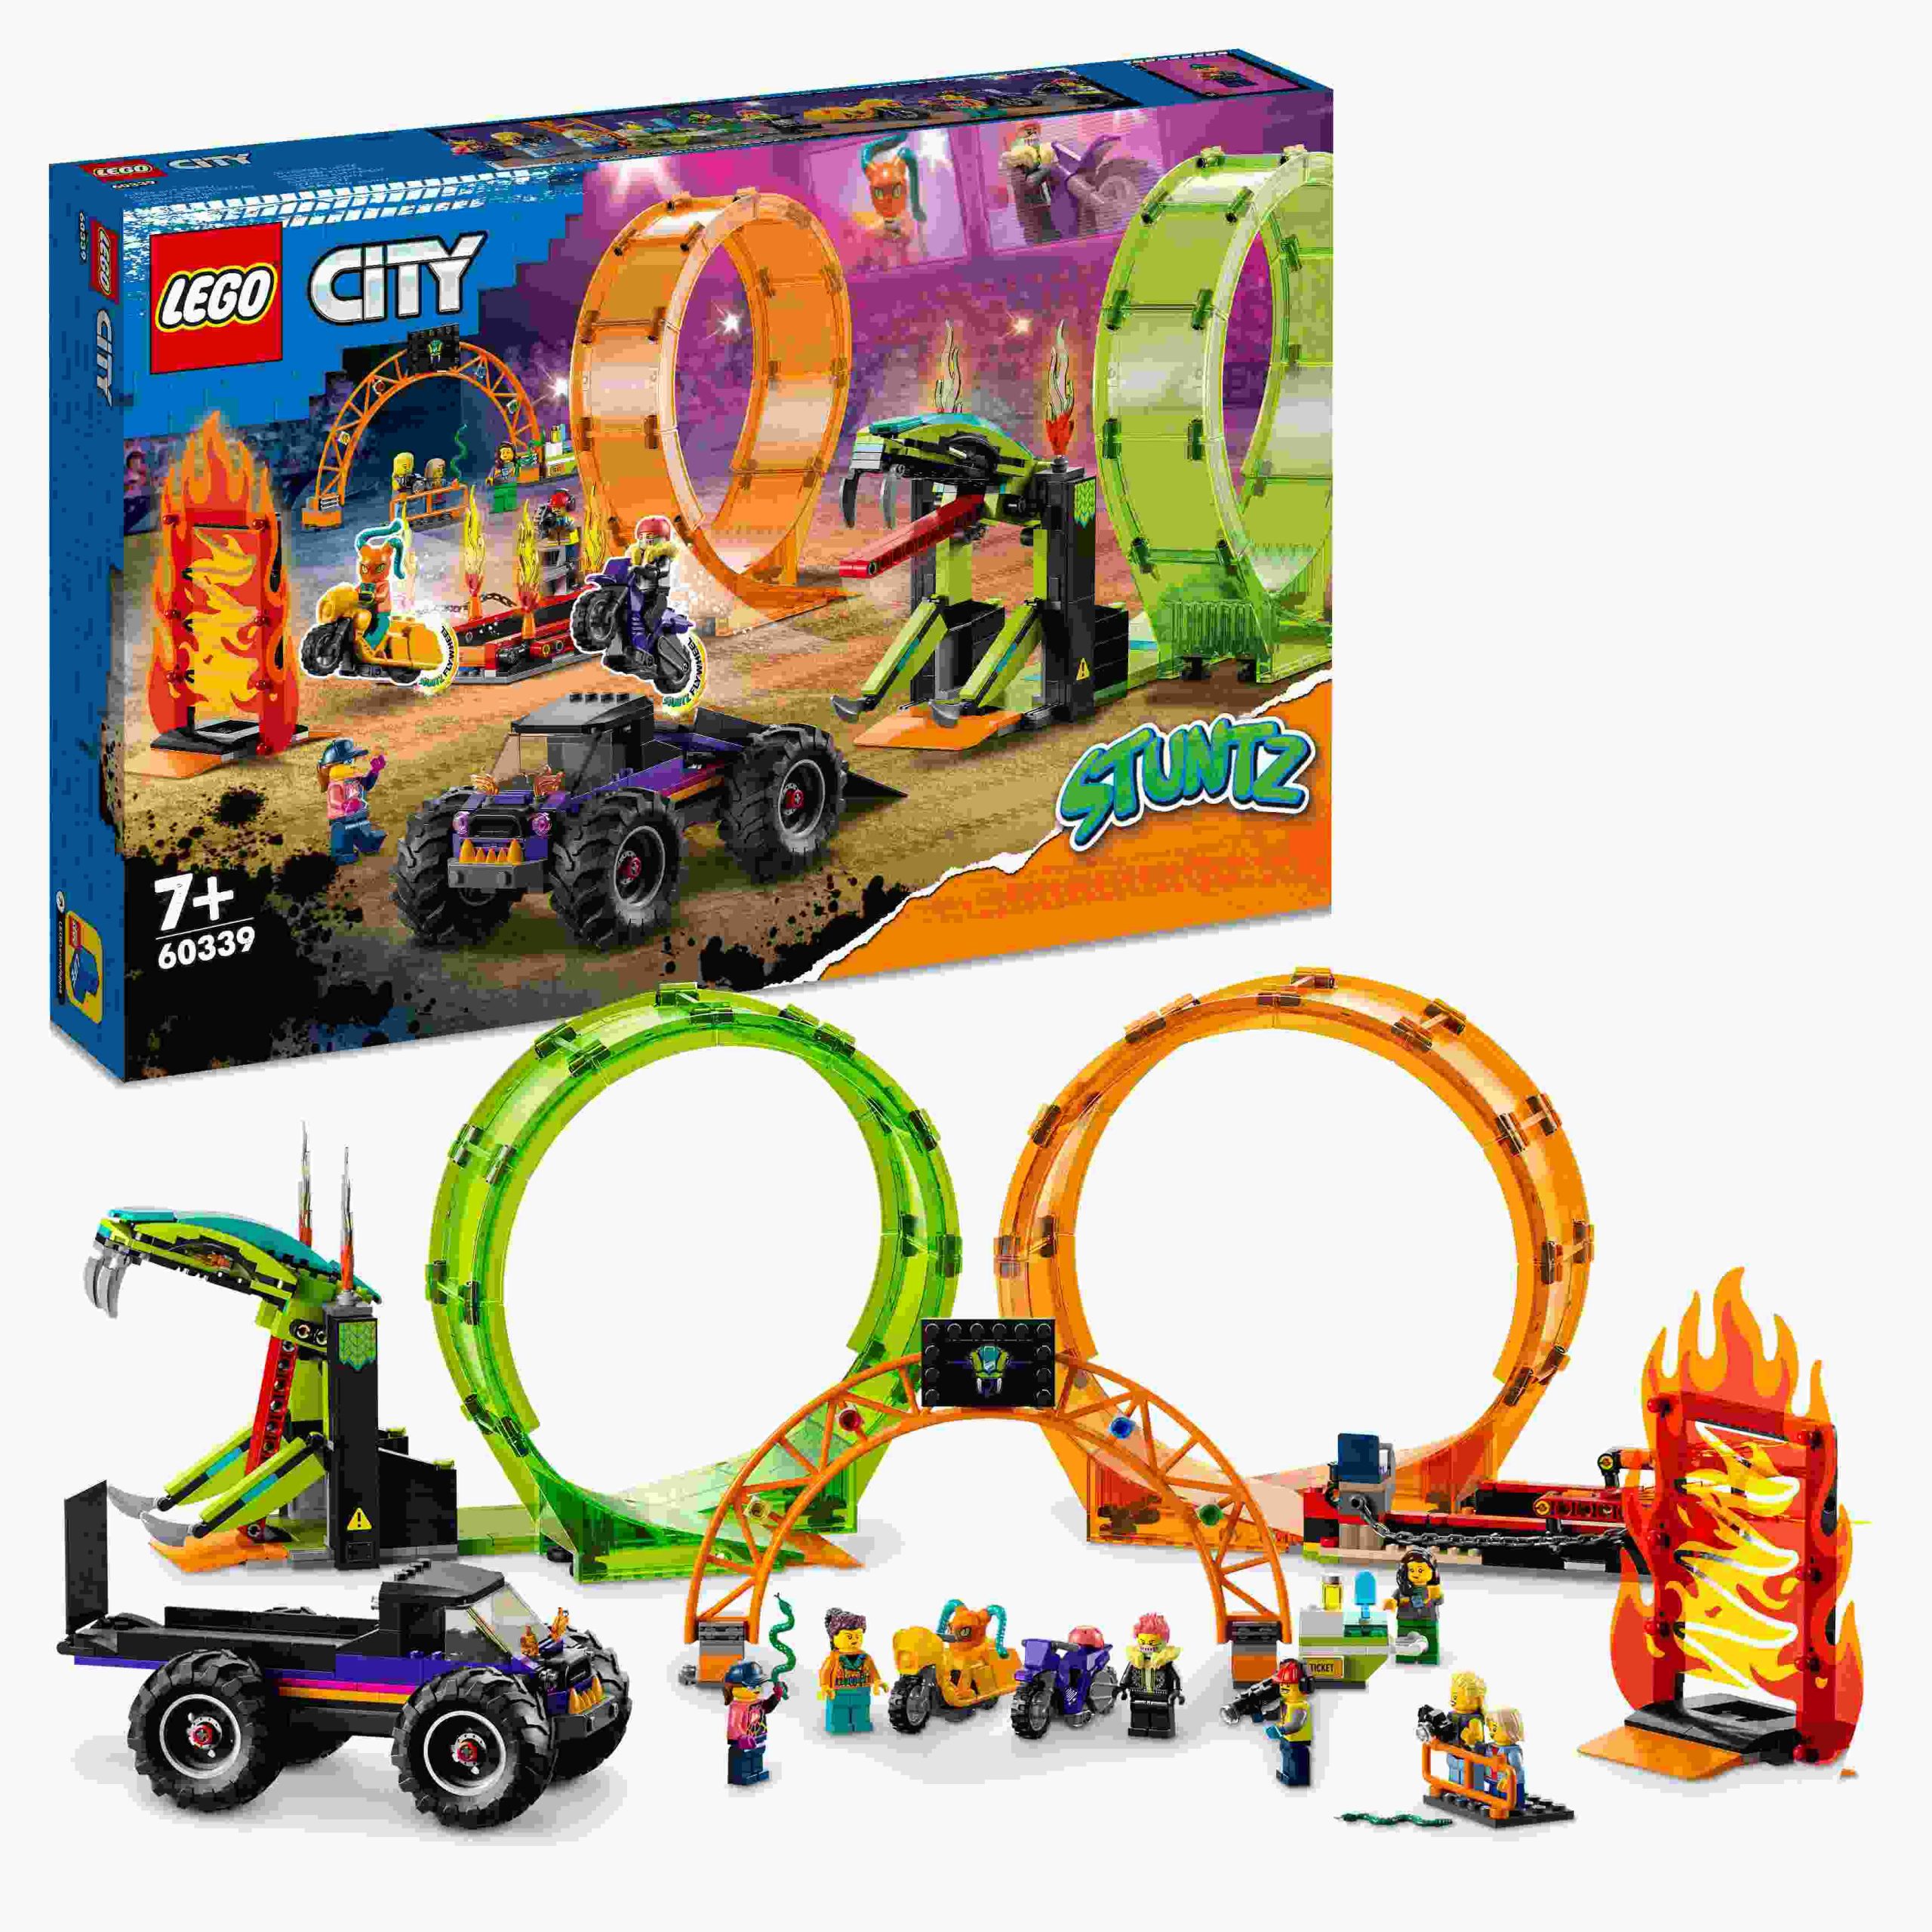 Lego city stuntz 60339 arena delle acrobazie, monster truck, moto giocattolo con minifigure, giochi per bambini dai 7 anni - LEGO CITY, LEGO CITY STUNTZ, Lego